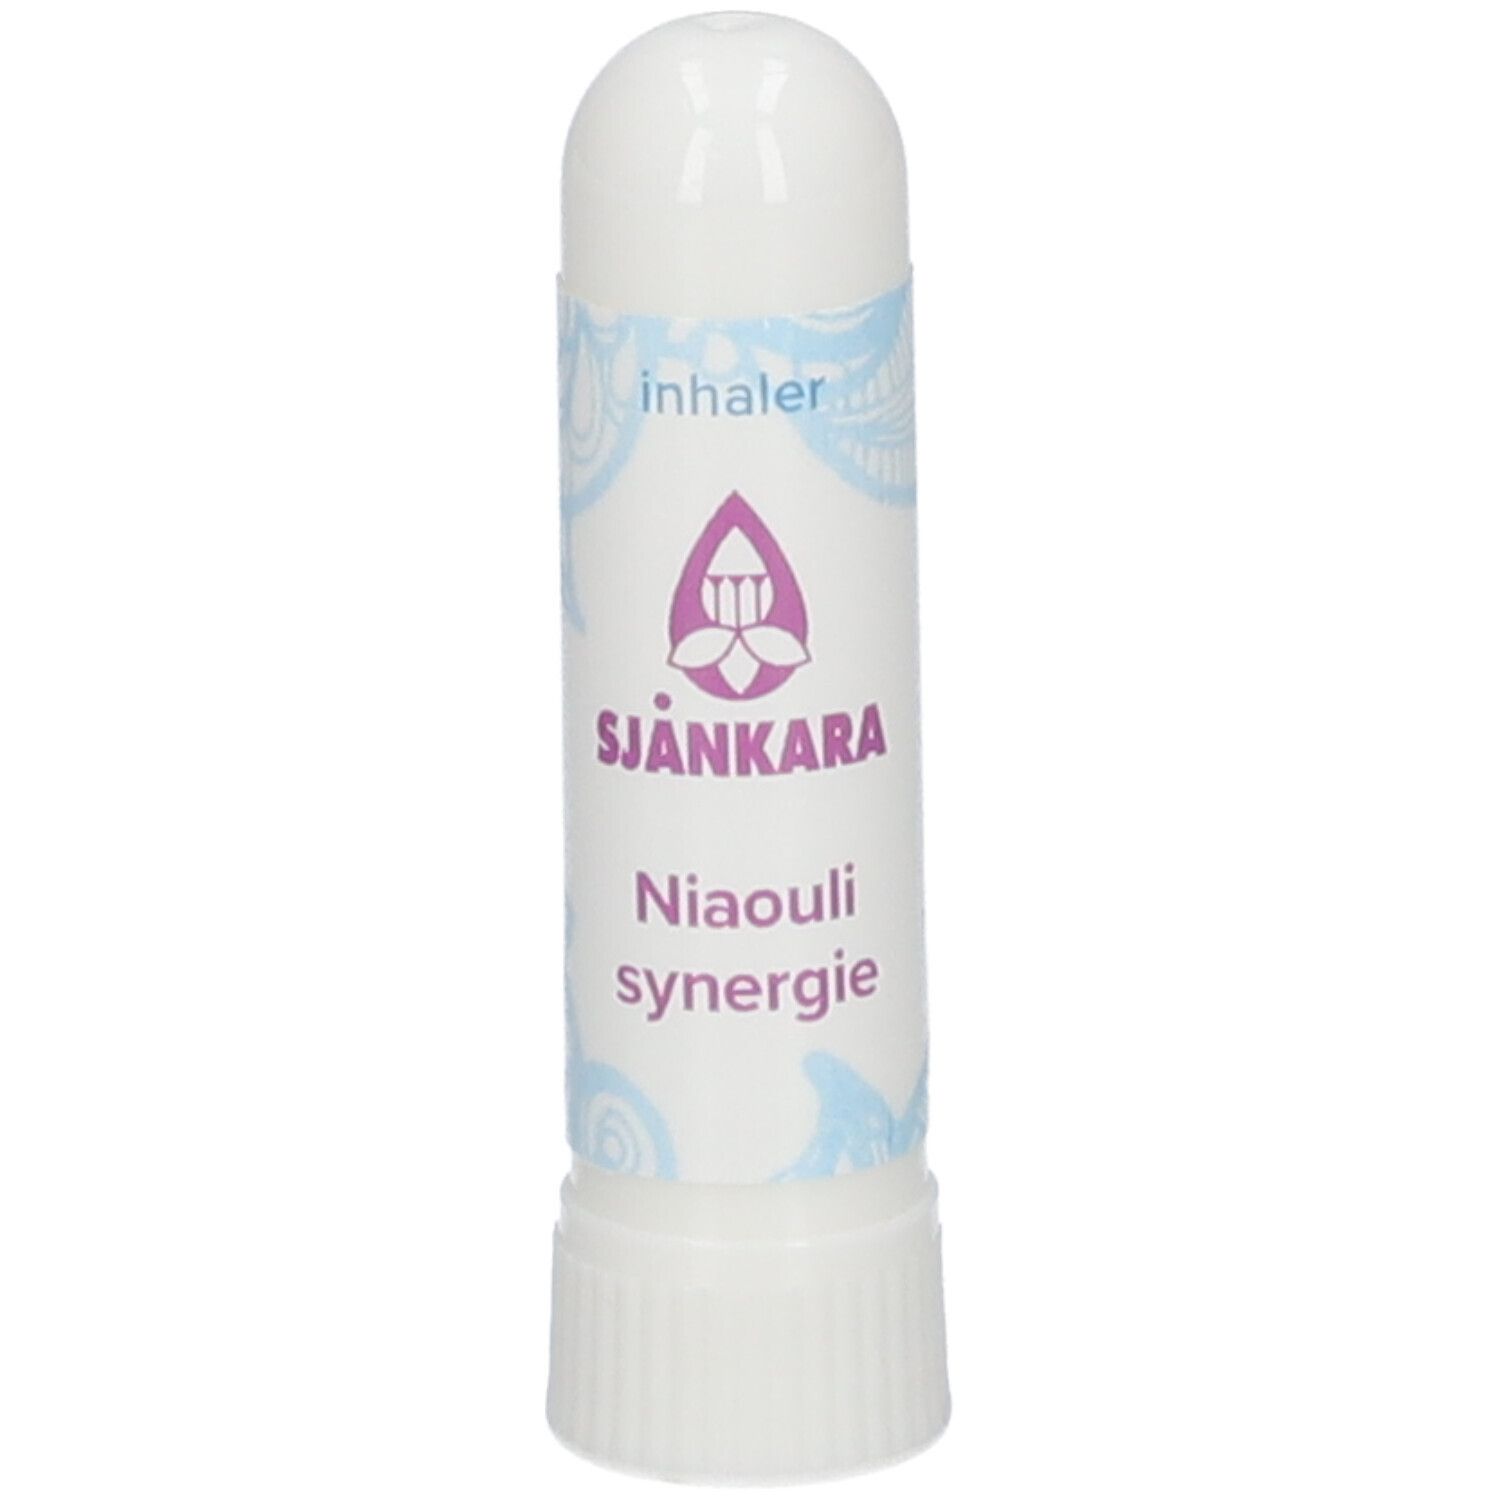 Sjankara Niaouli Synergie Inhaler